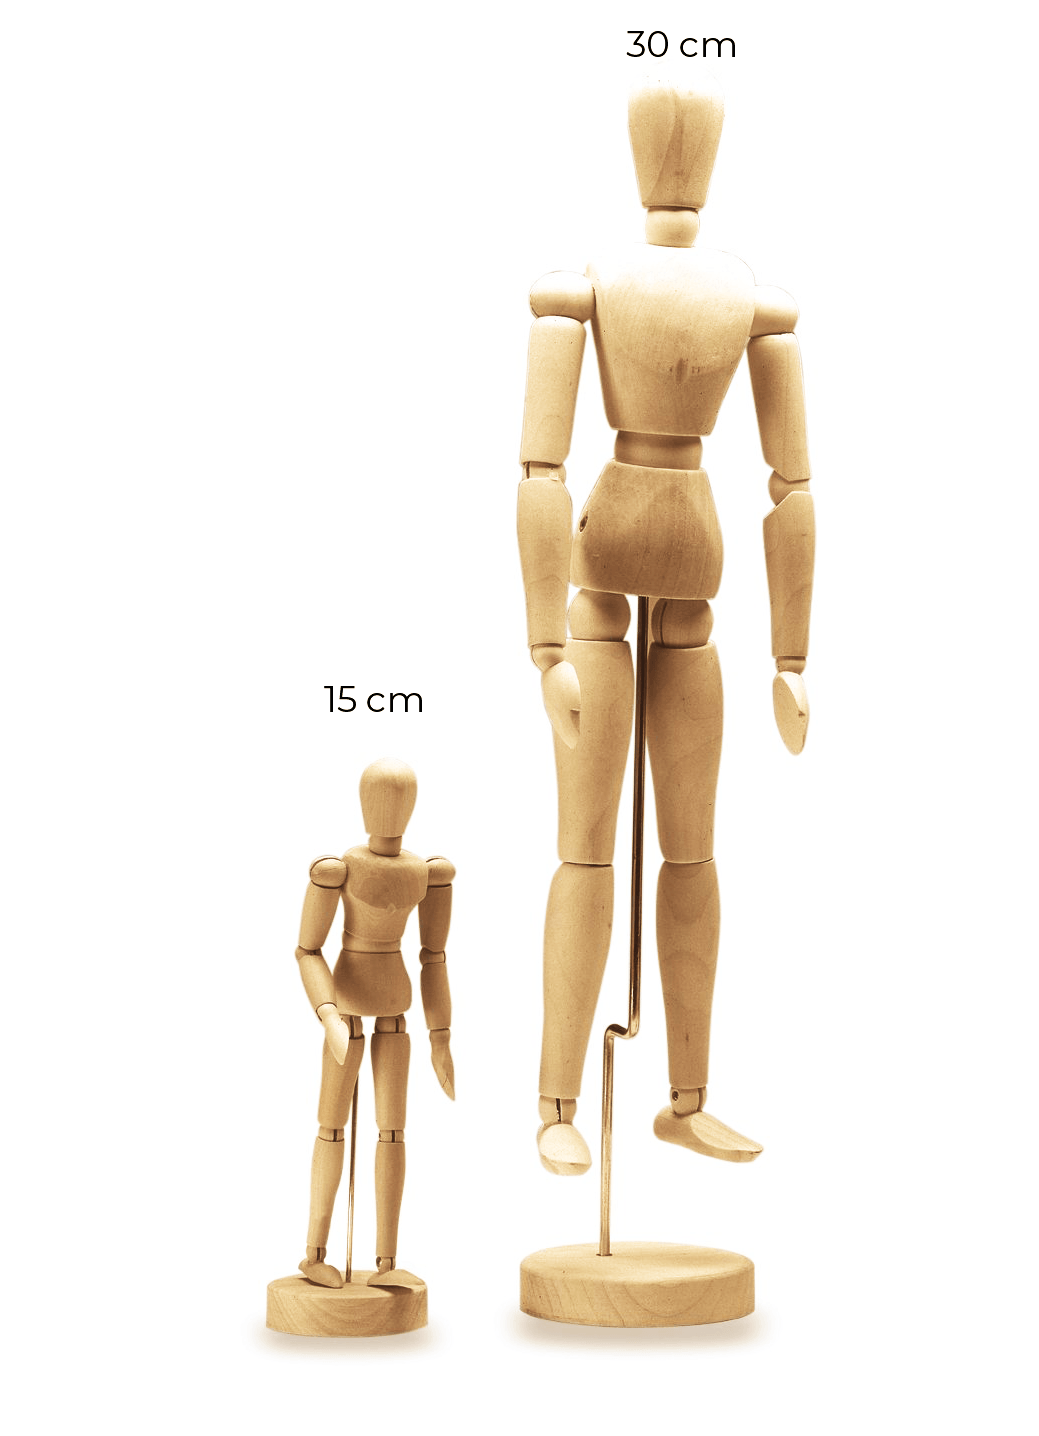 Maniquí de Humanos Modelo articulado para Dibujo y Pintura XUBX Maniquí de Madera 33 cm Muñeco Madera Articulaciones Flexibles Artista con soporte Cuerpo Humano Figura Articulada para Dibujo 